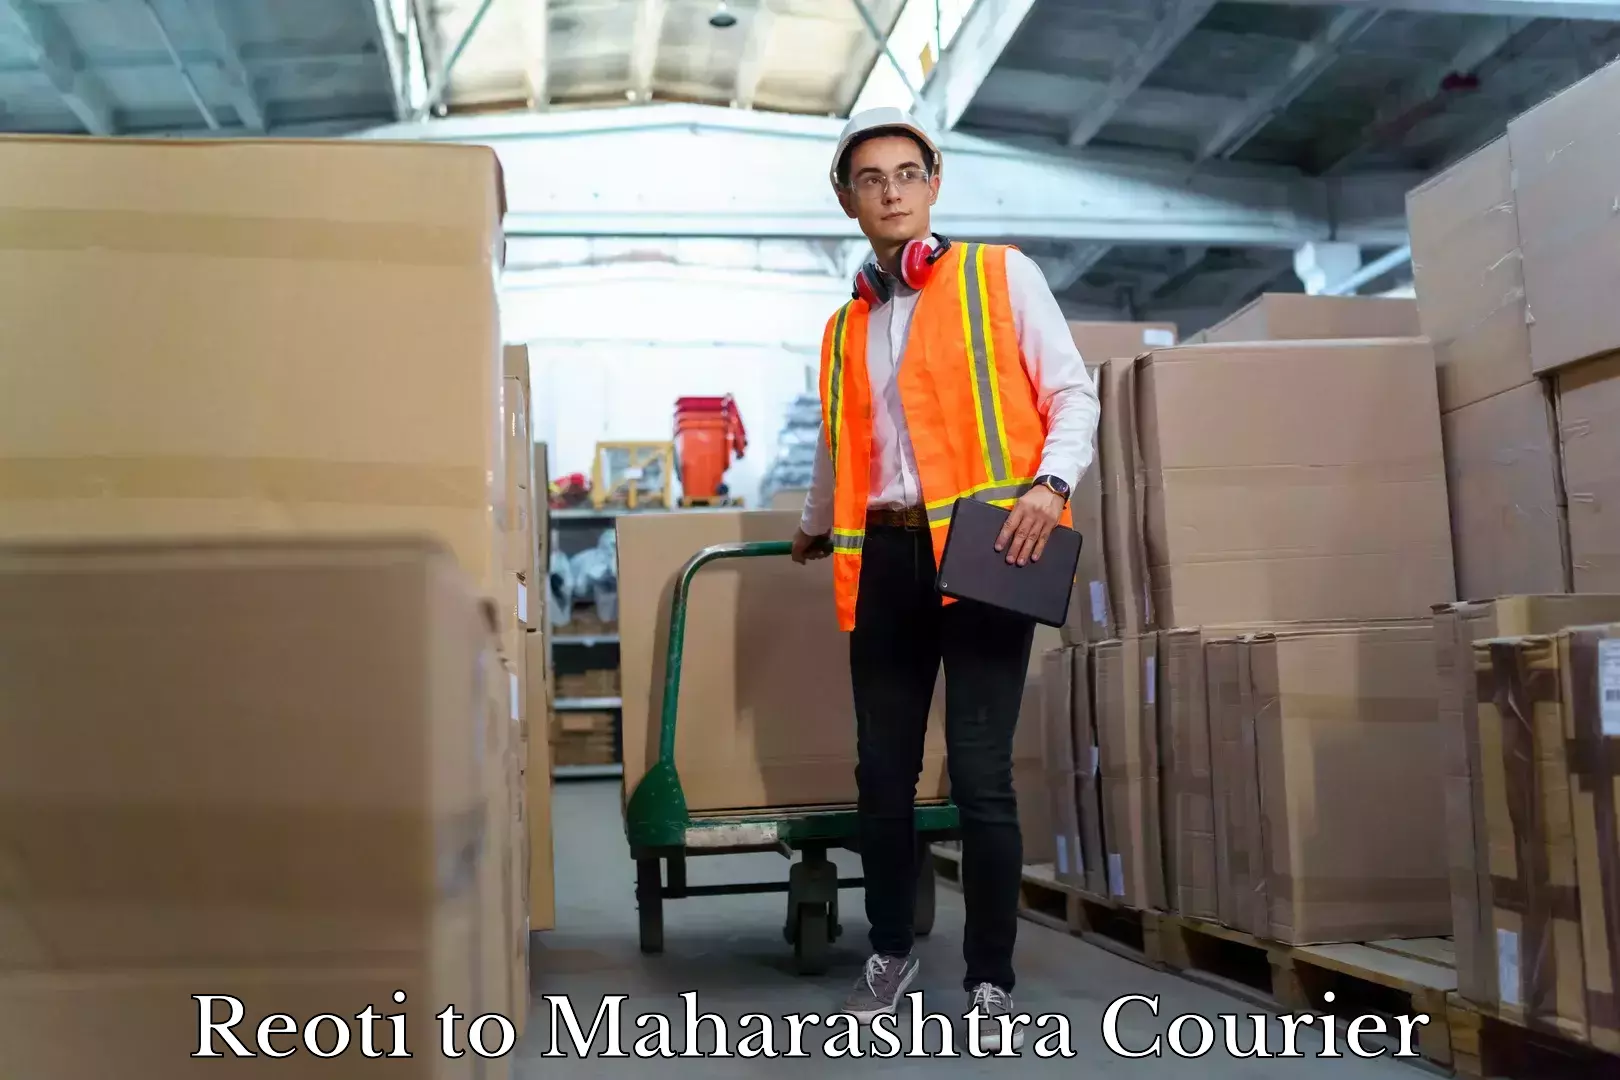 Efficient moving company Reoti to Maharashtra